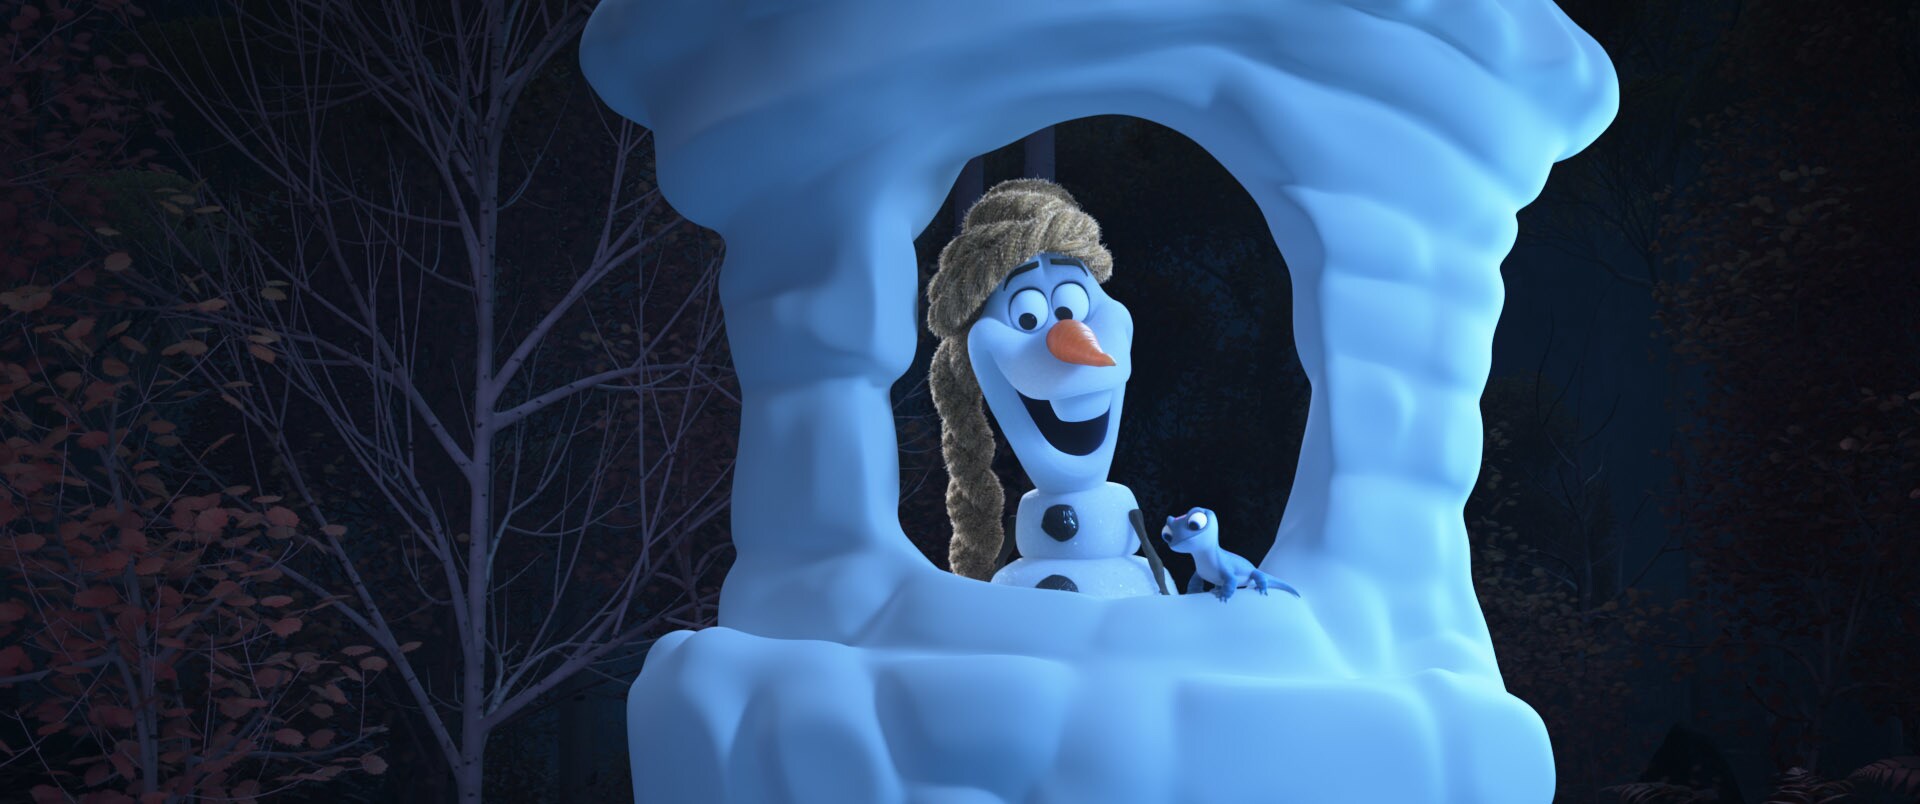 Trailer mostra como Olaf narrará dos clássicos Disney em nova série do Disney+